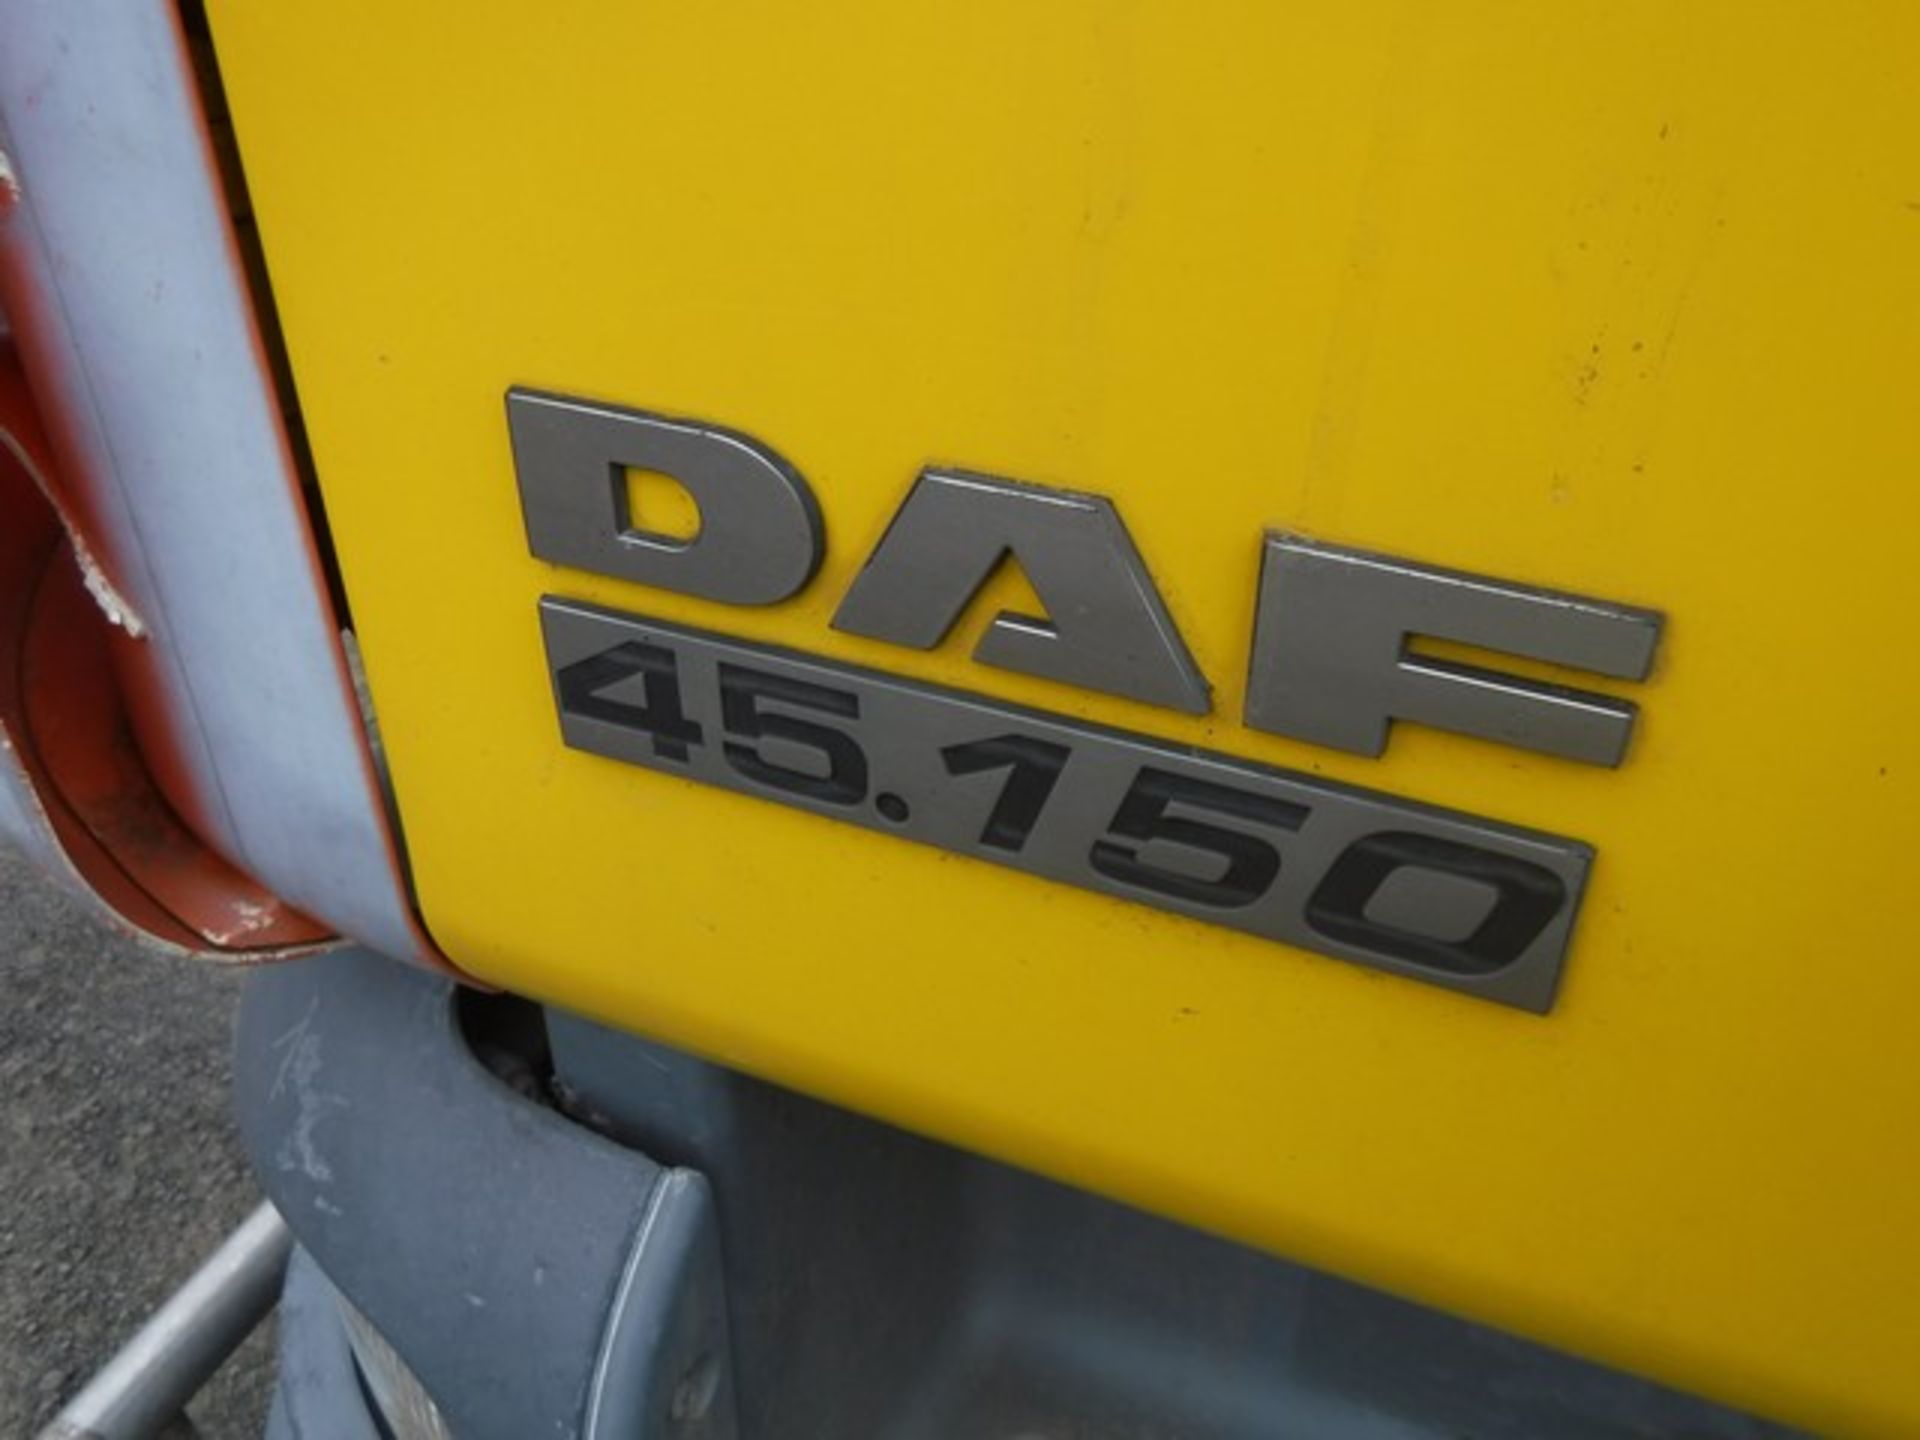 DAF TRUCKS MODEL FA 45.150 - 3920cc - Image 3 of 23